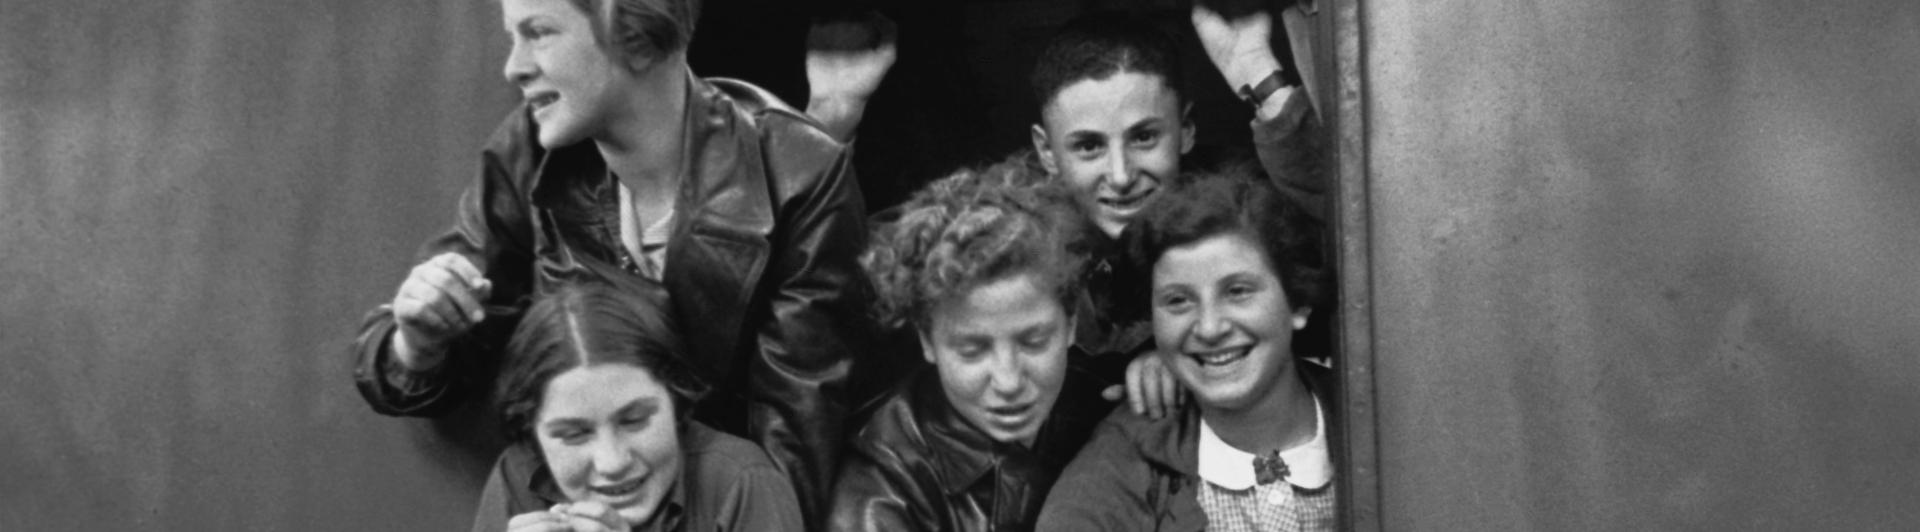 Schwarz-Weiß-Fotografie jugendlicher Jungen und Mädchen, die sich lachend aus einem Zugfenster lehnen